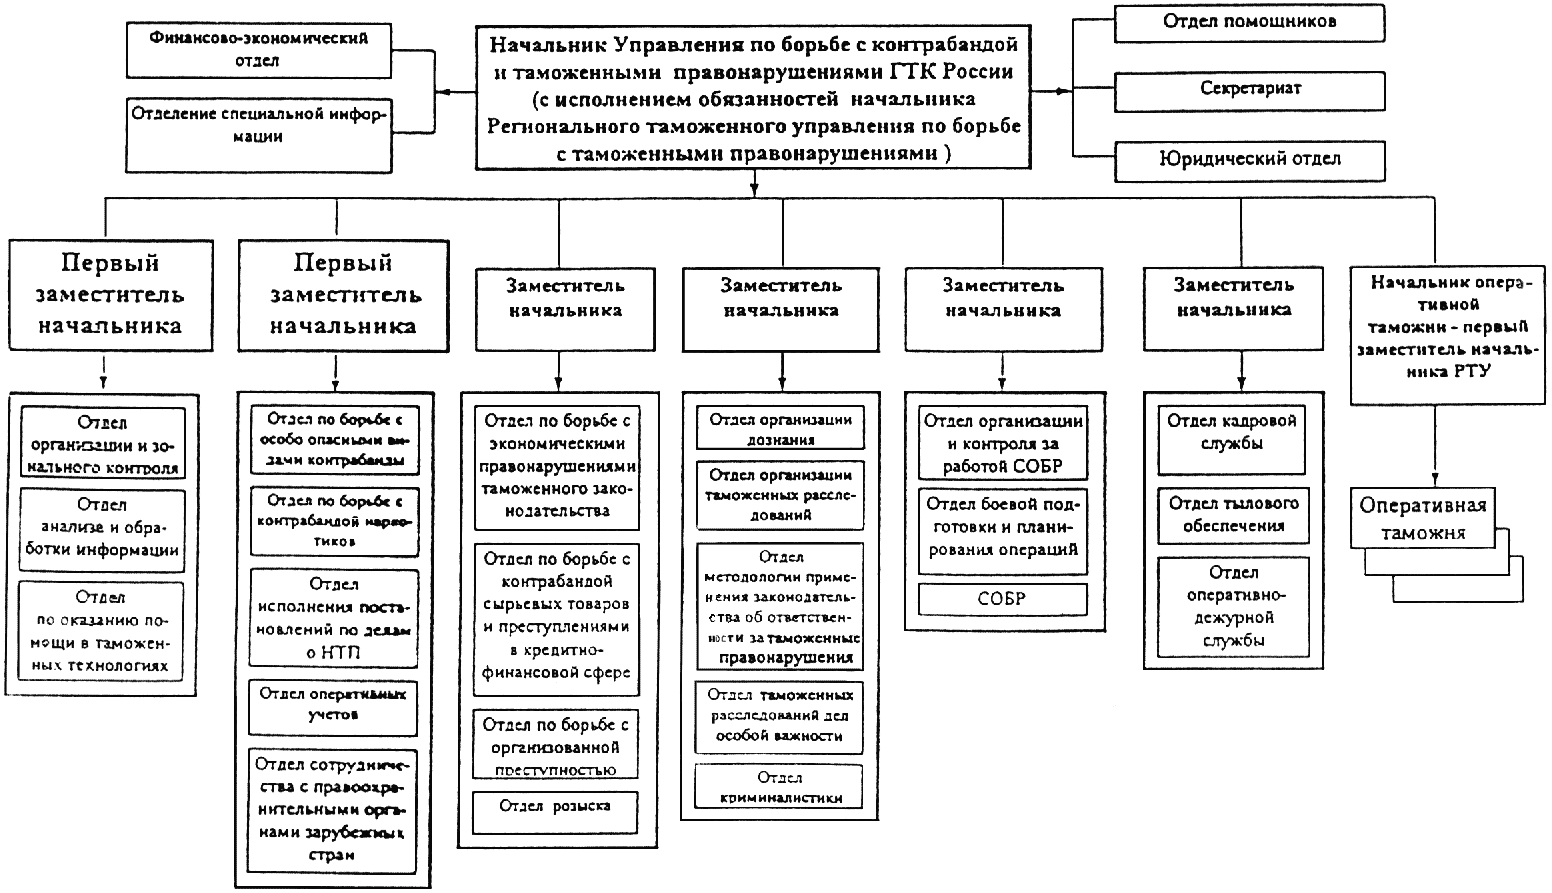 Основные этапы организации работы пуф организации